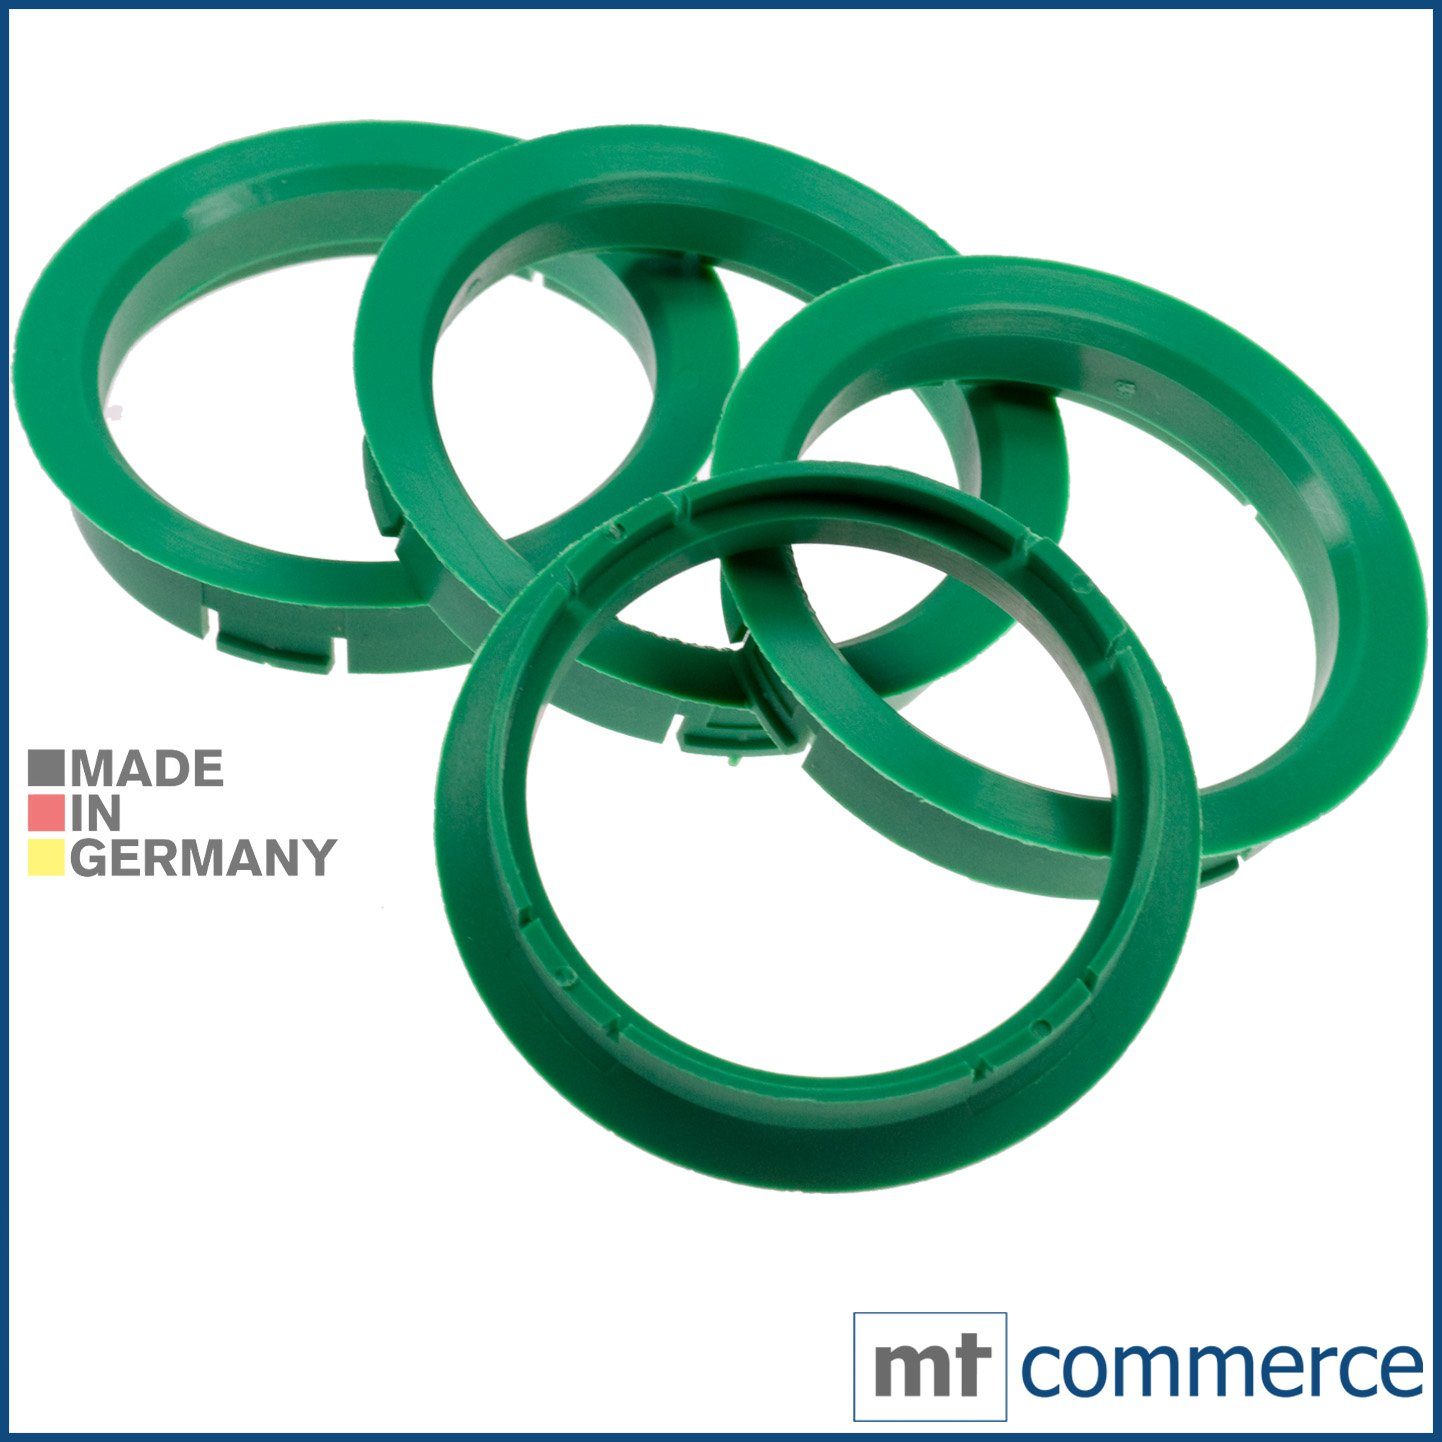 RKC Reifenstift 4X Zentrierringe grün Felgen Ringe Made in Germany, Maße: 64,0 x 56,1 mm